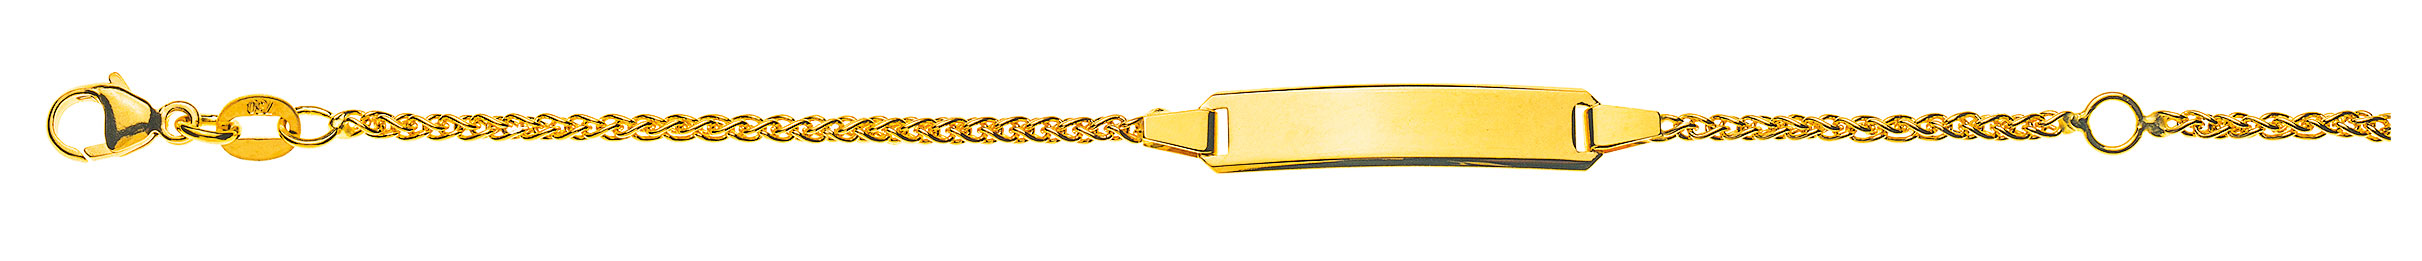 AURONOS Prestige ID bracelet 18k yellow gold plait chain 14cm